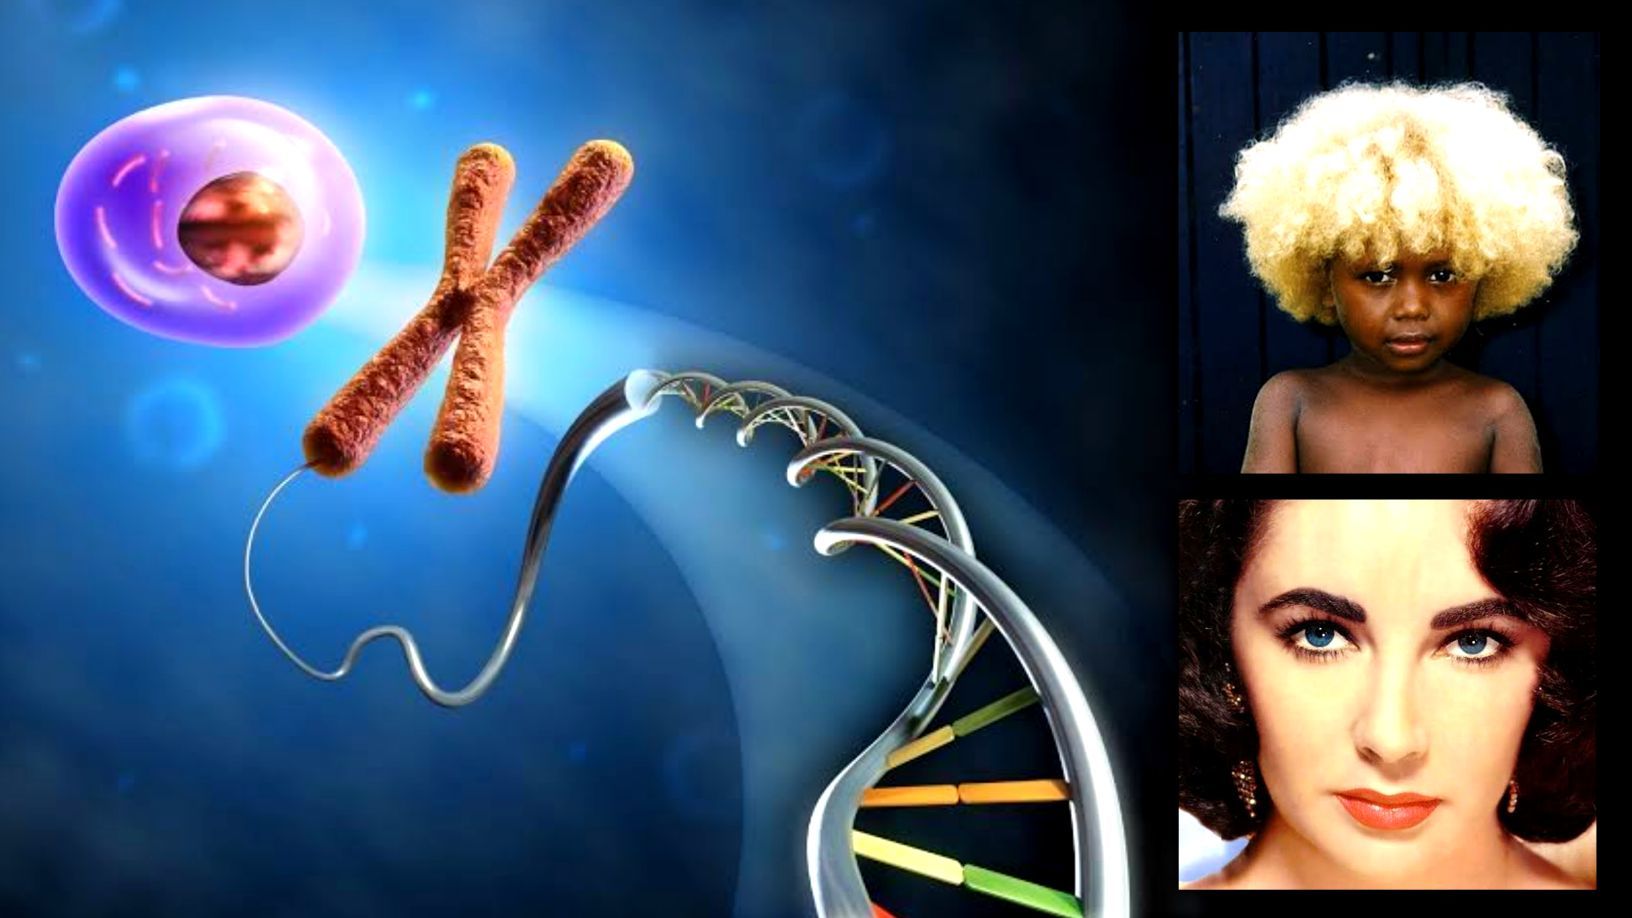 26 најчуднијих чињеница о ДНК и генима за које никада нисте чули 1